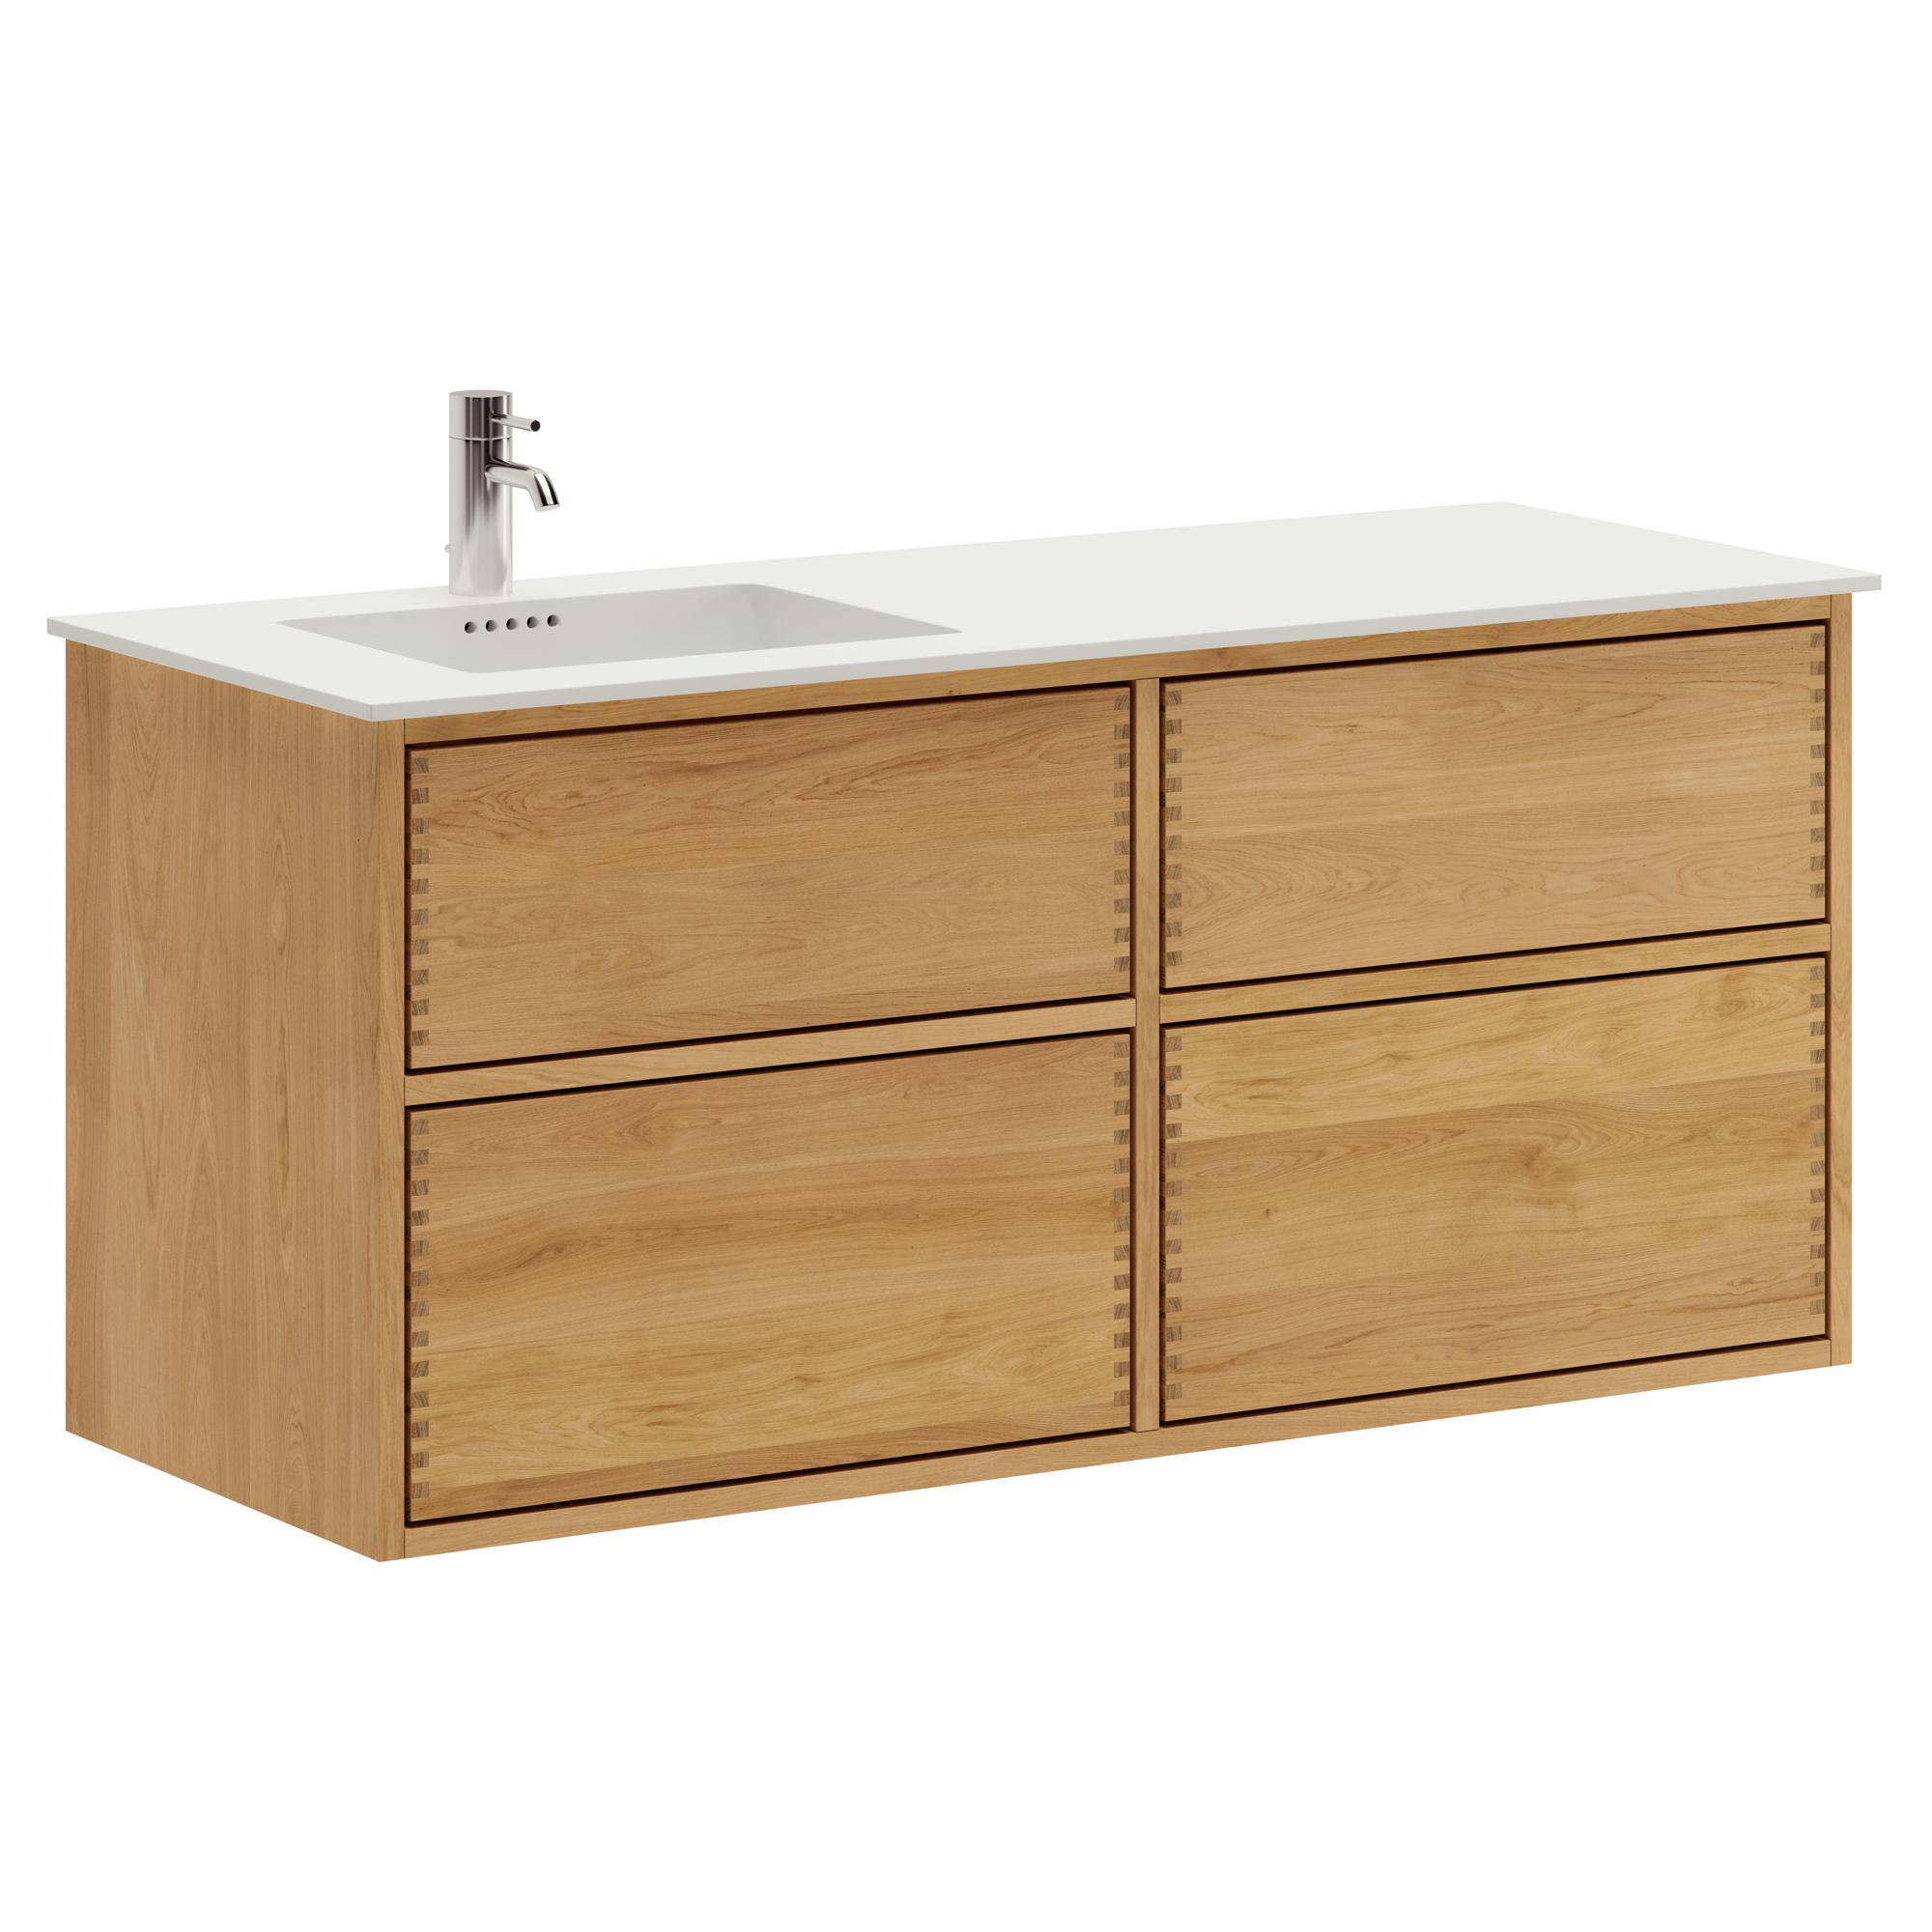 120 cm Just Wood Push Badezimmermöbel mit 4 Schubladen und Solid Surface-Waschbecken - Links